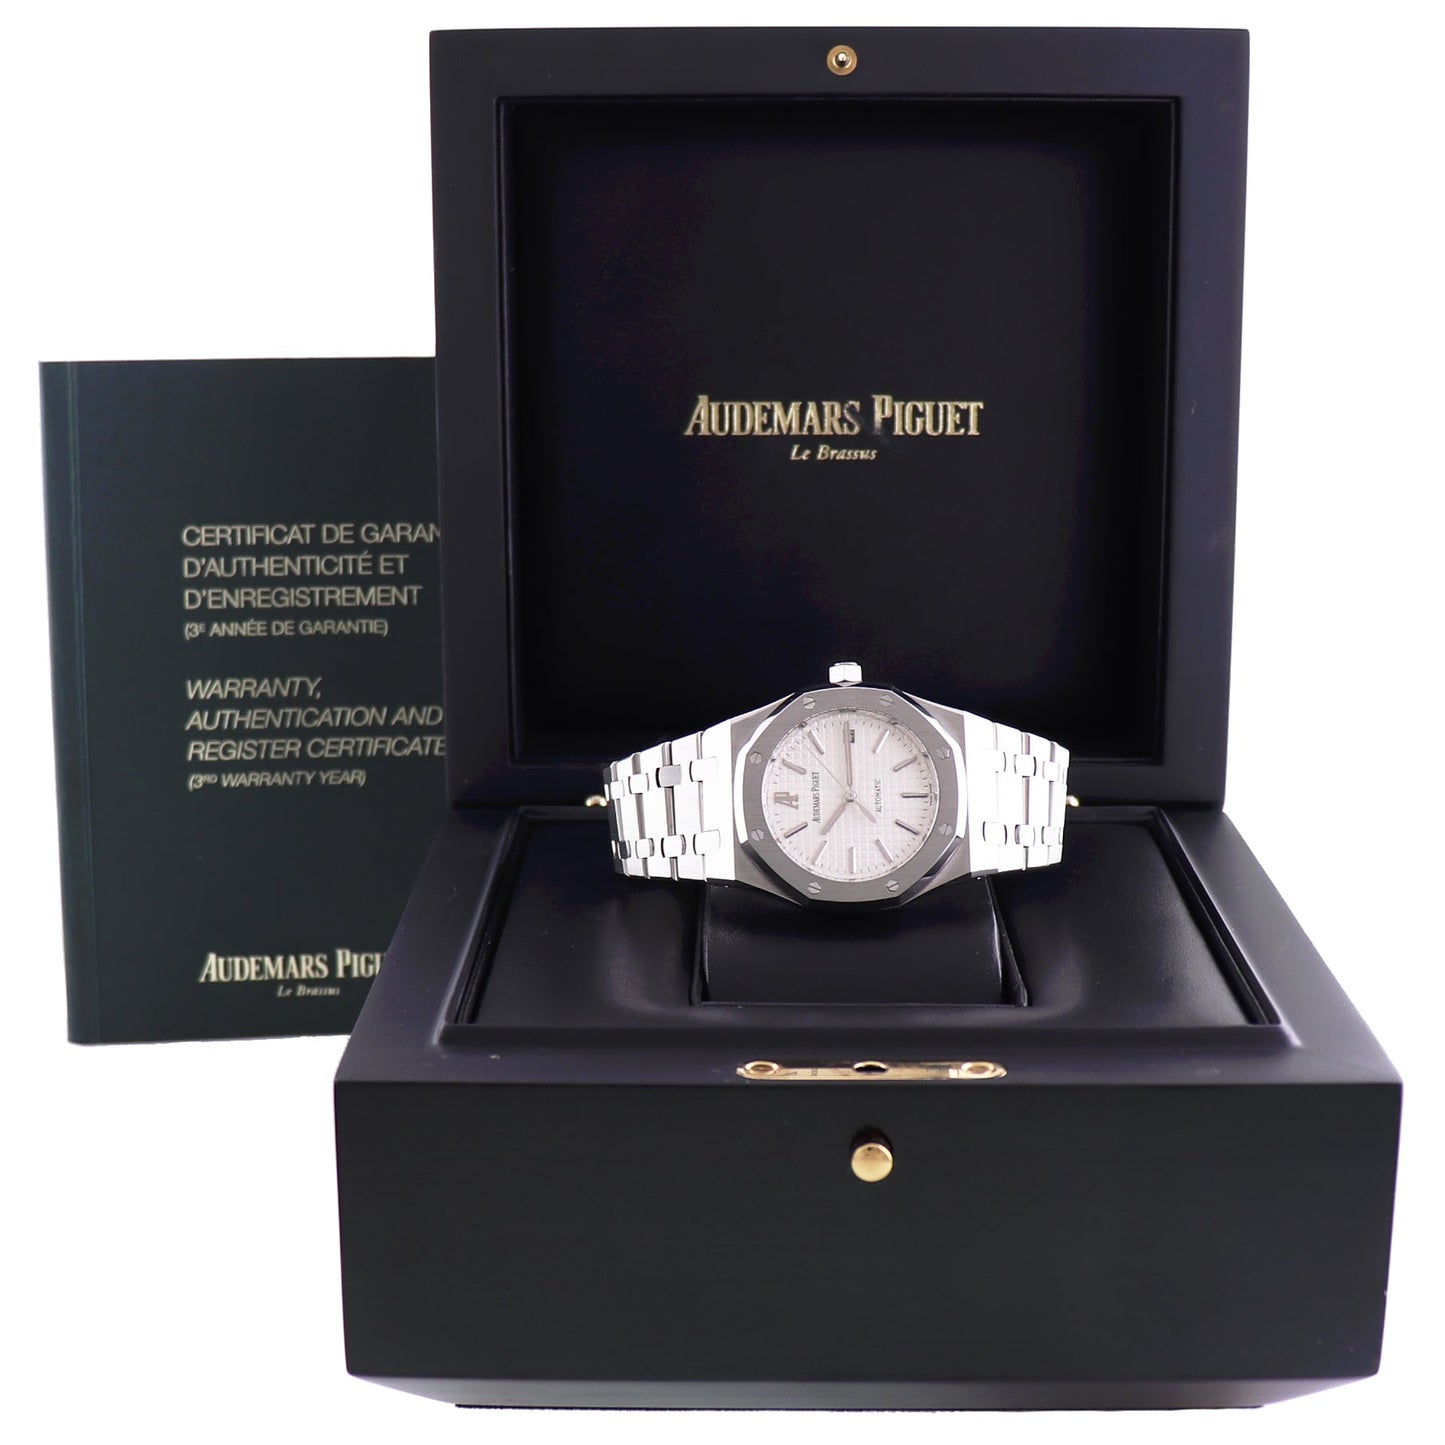 MINT Audemars Piguet Royal Oak White Dial 39mm Steel 15300 Date Watch Box